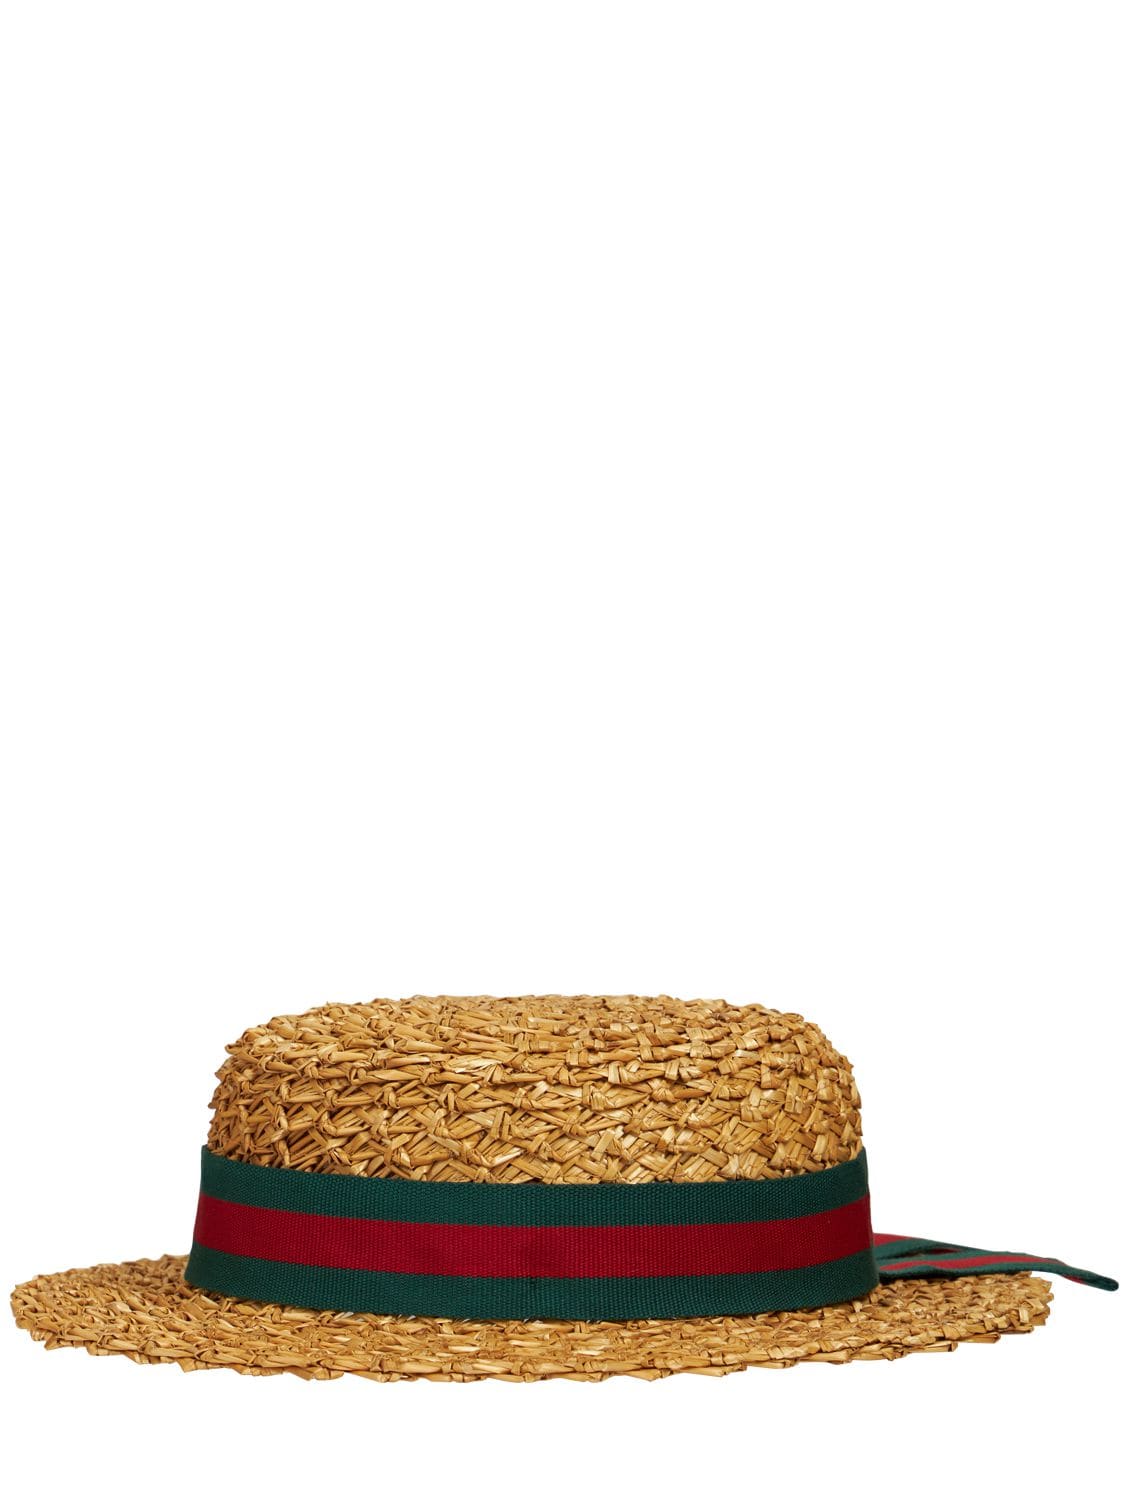 Gucci Babies' Darla Straw Hat In Multicolor